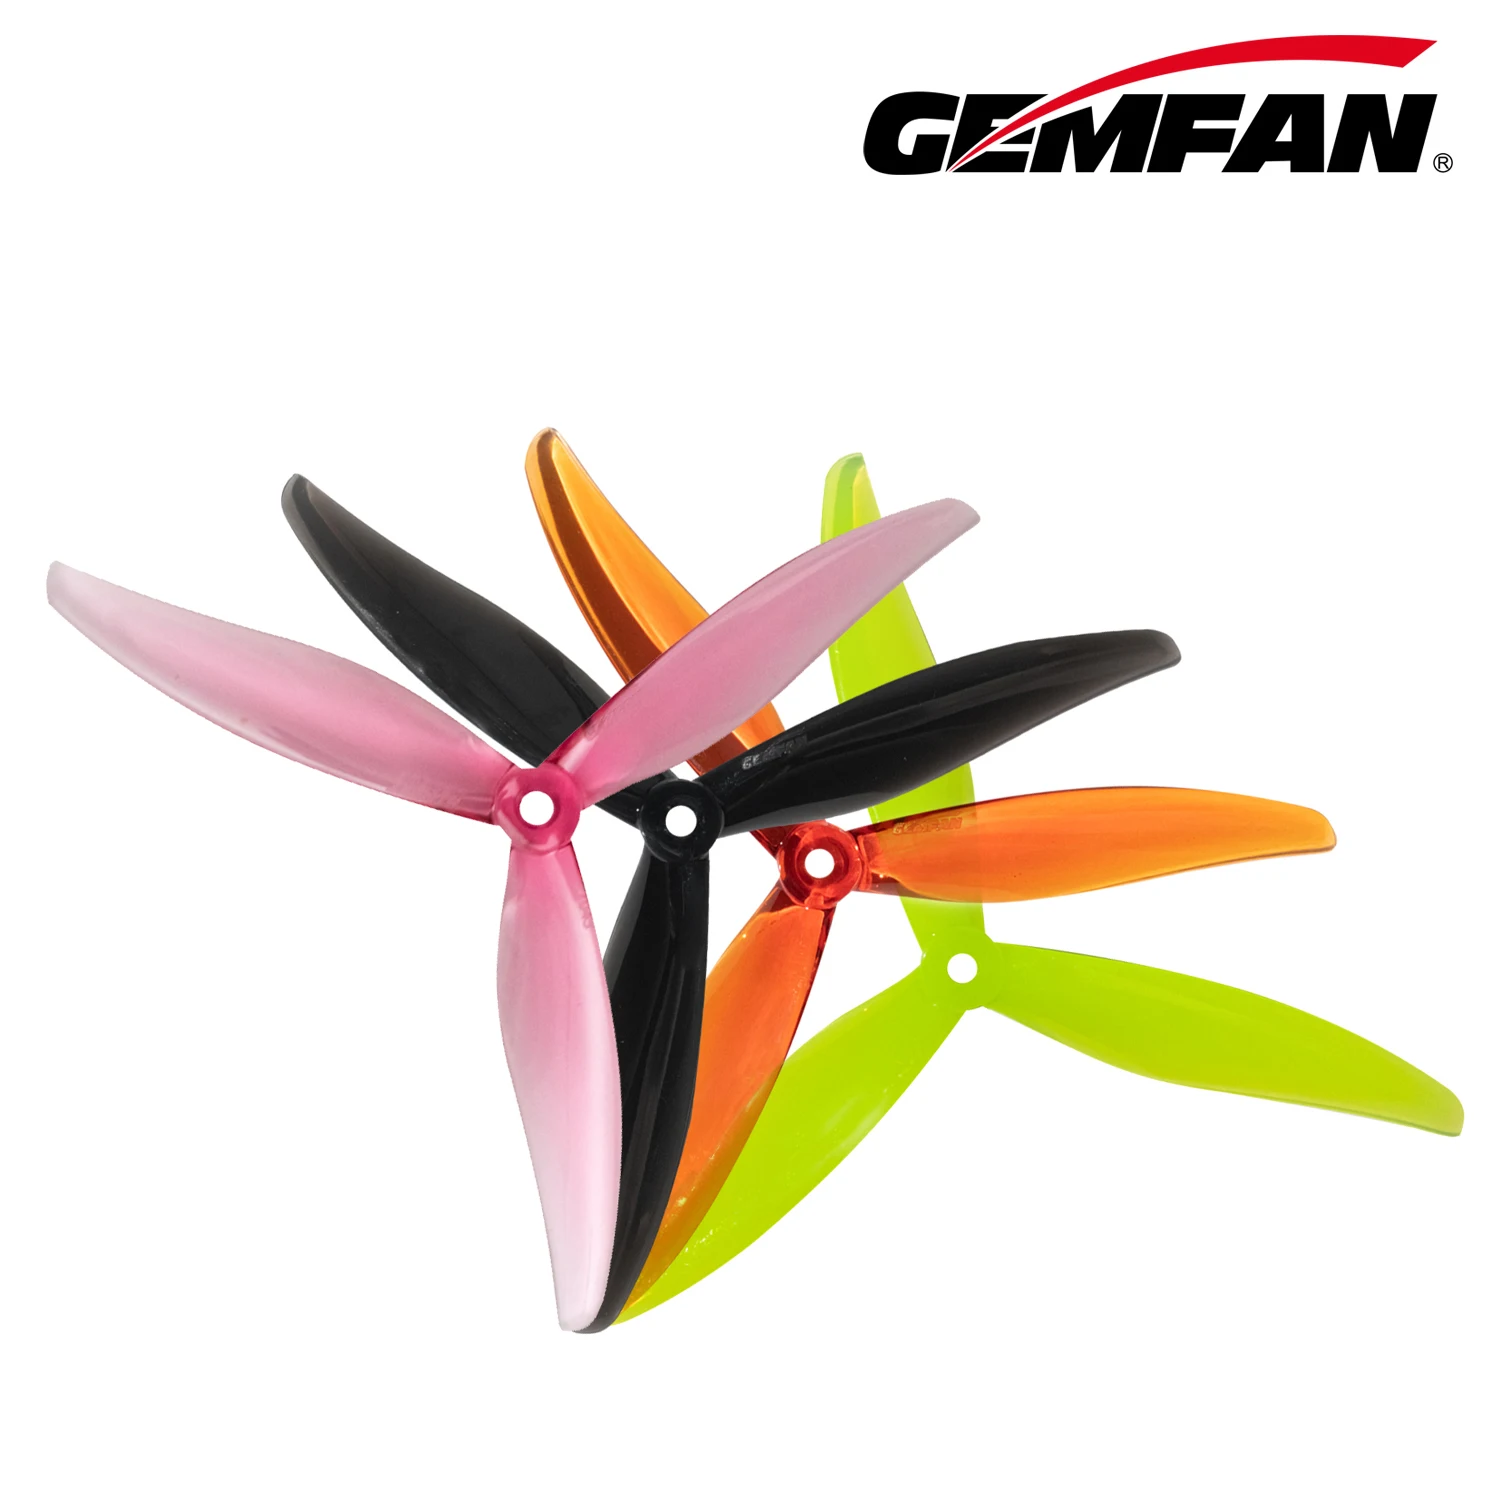 Gemfan X Street League 7043 7x4.3 3-blade propeller